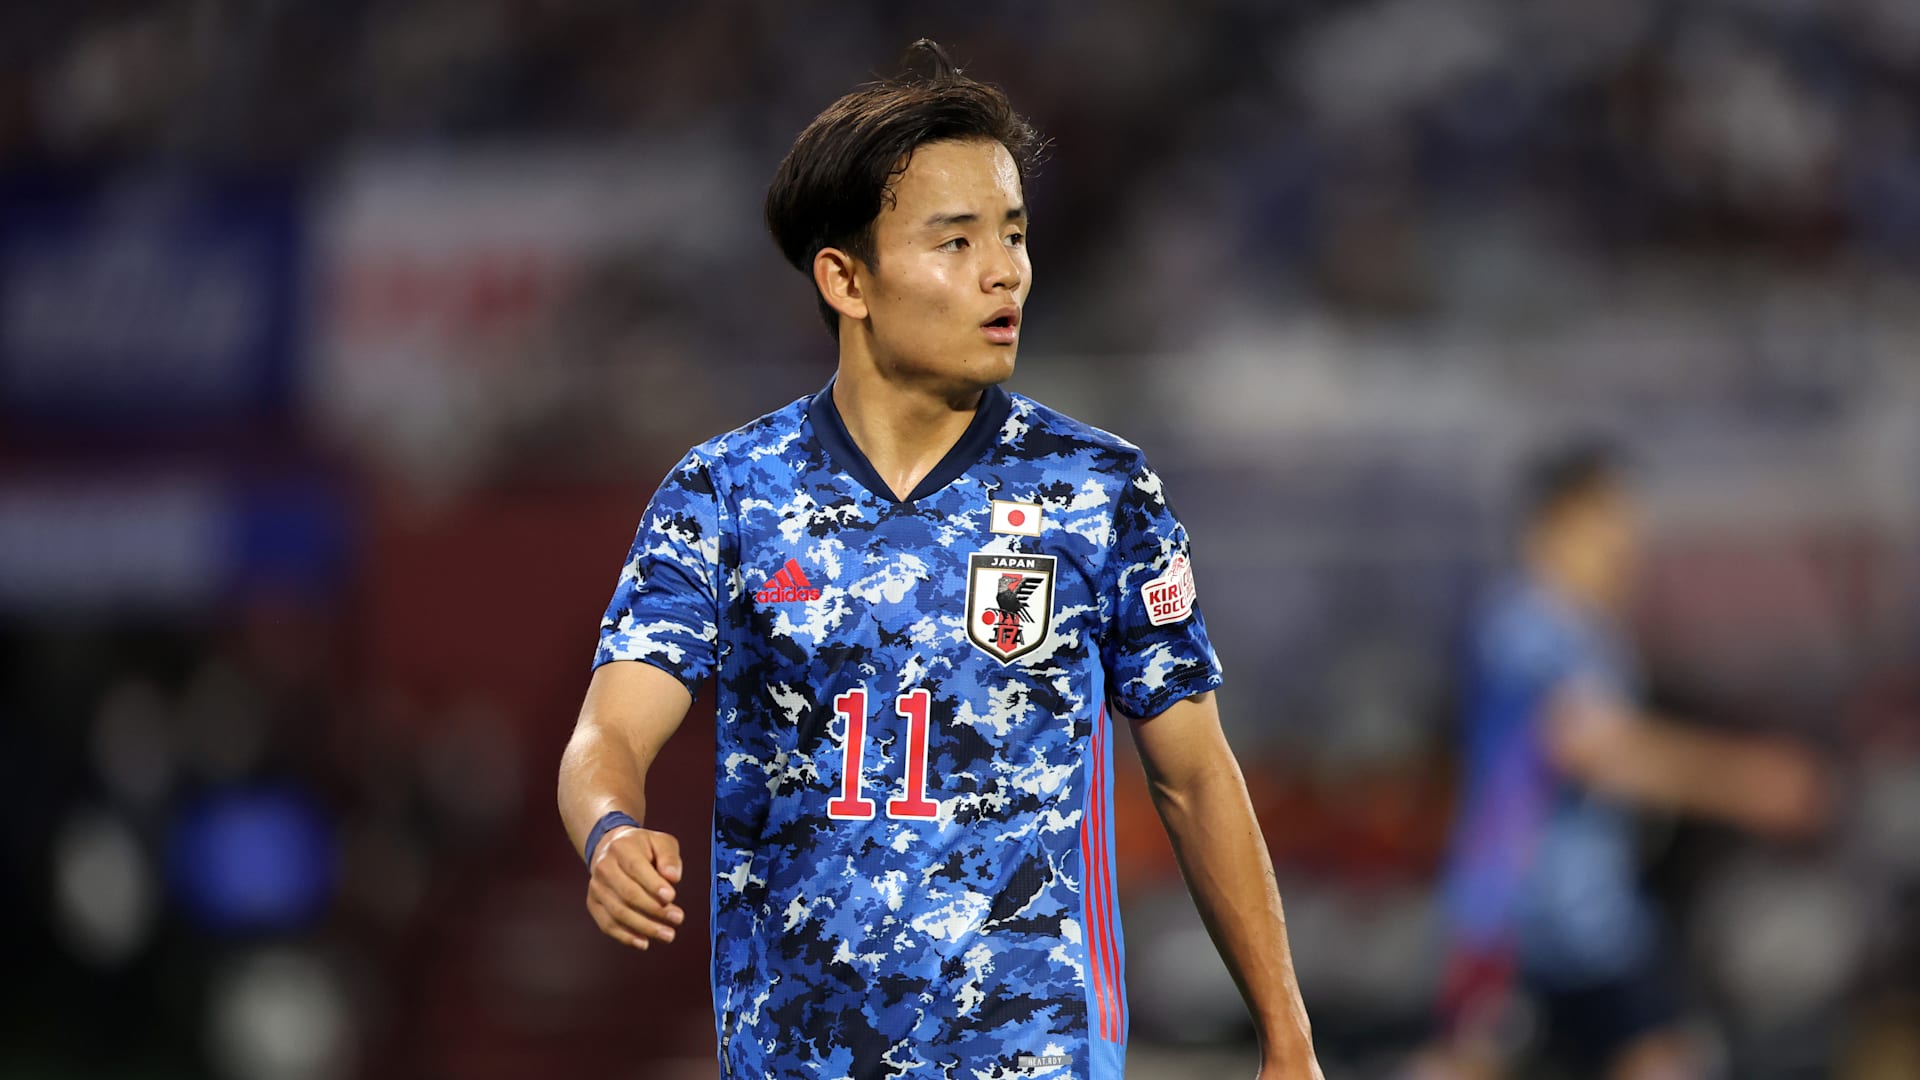 サッカー 日本代表 久保建英がレアル ソシエダに移籍 自分のスタイルと合致したチーム